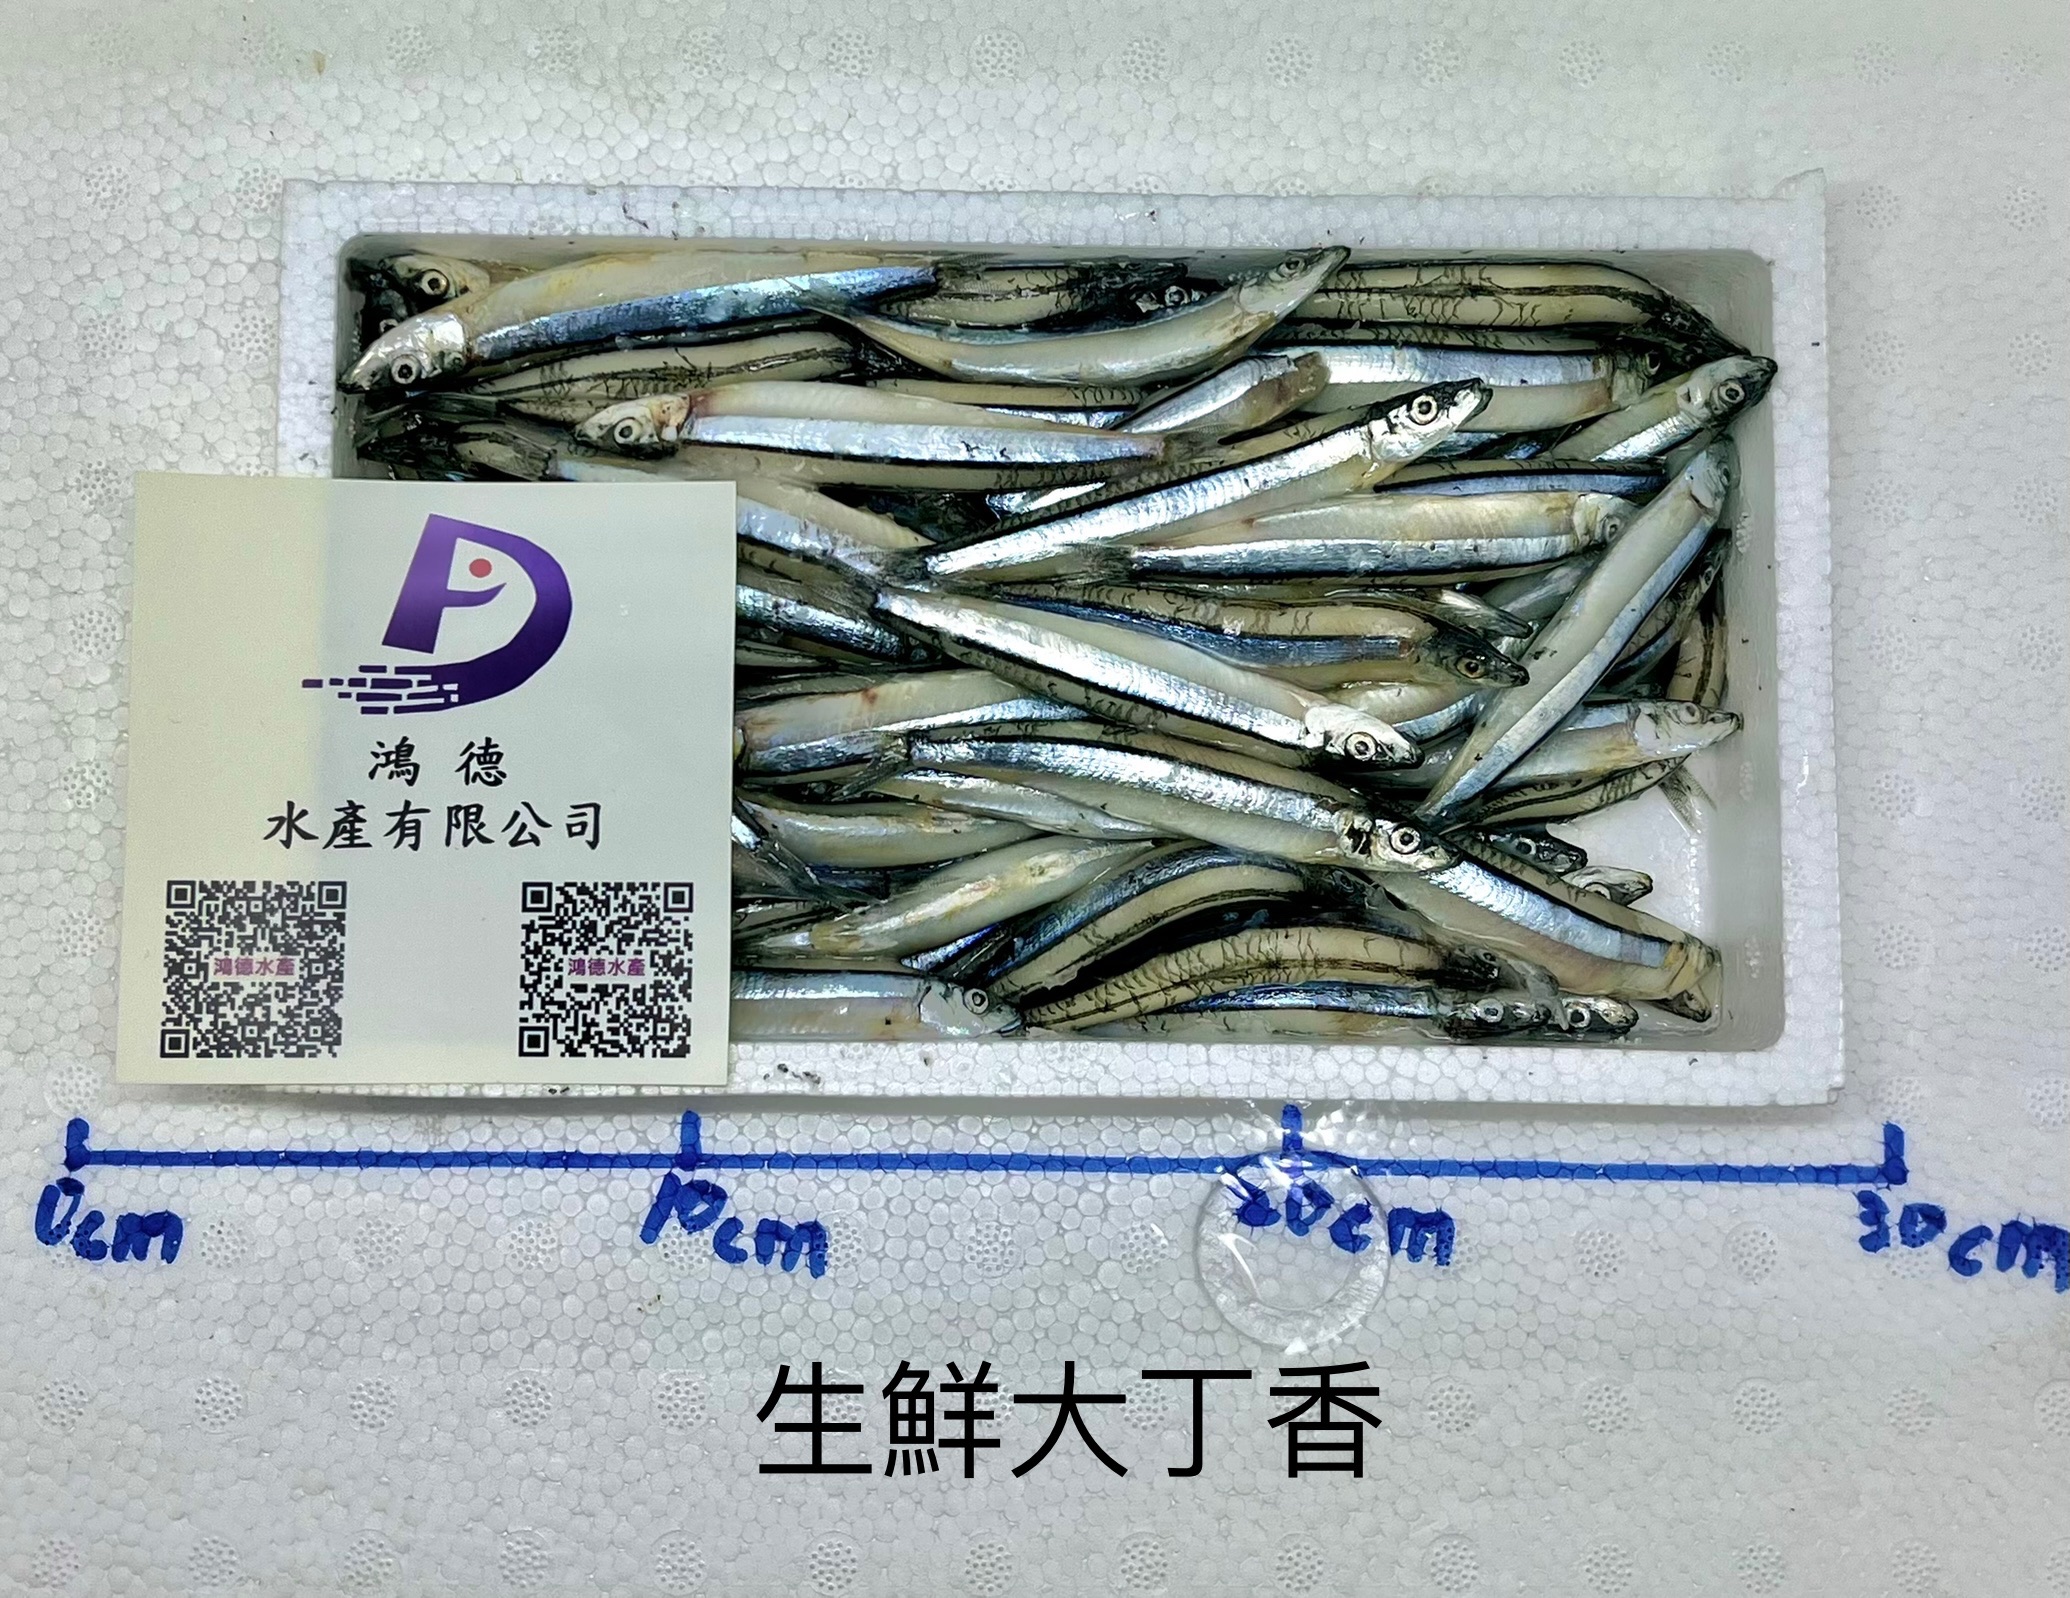 日本生鮮大丁香魚一盒只要200元-鴻德水產